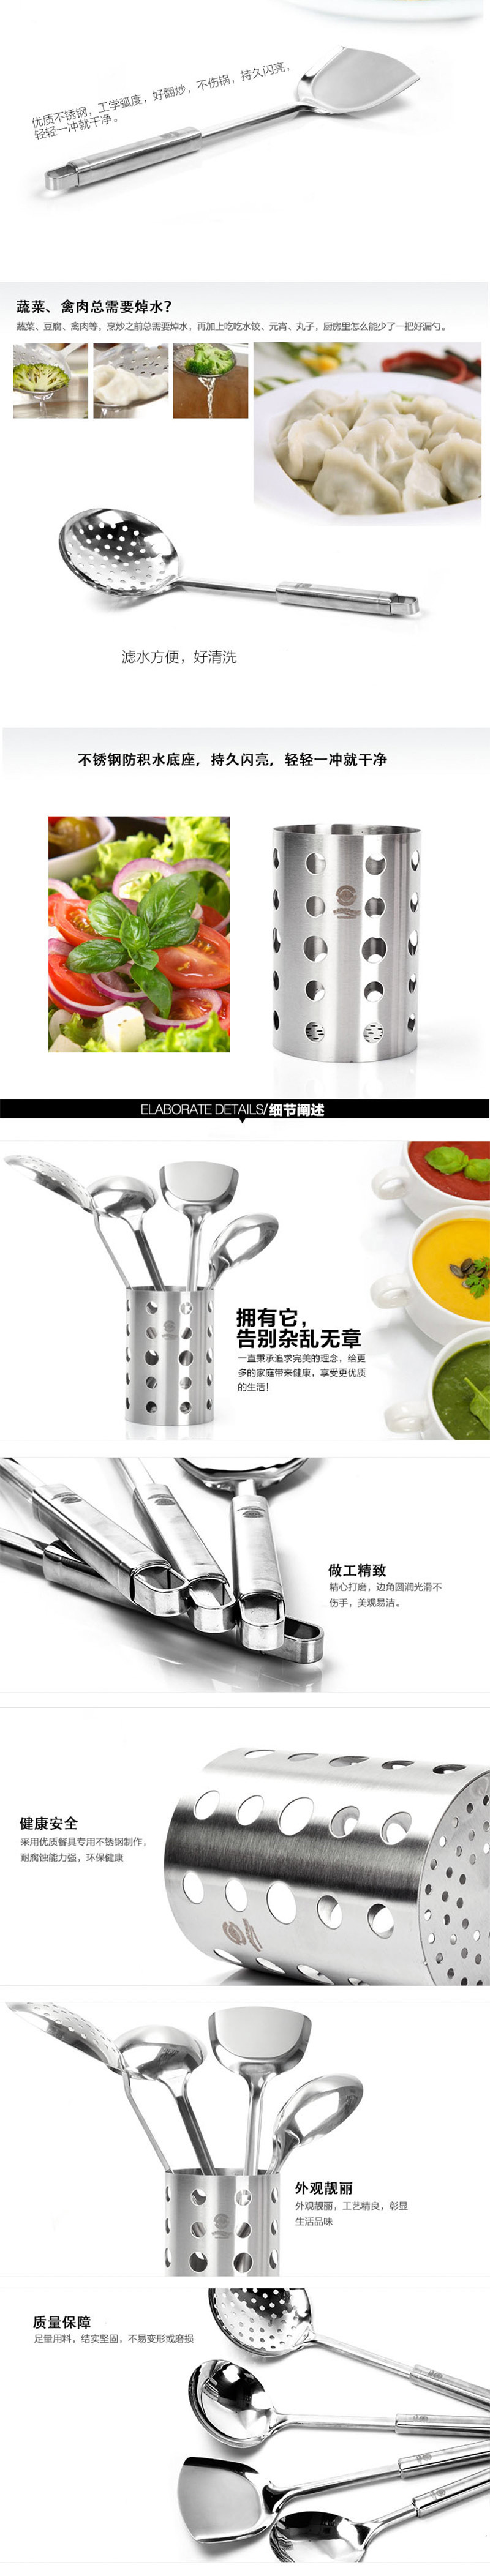 家魔仕 HM-7421 不锈钢厨具五件套装（锅铲、饭勺、大汤勺、漏勺、筷子筒）